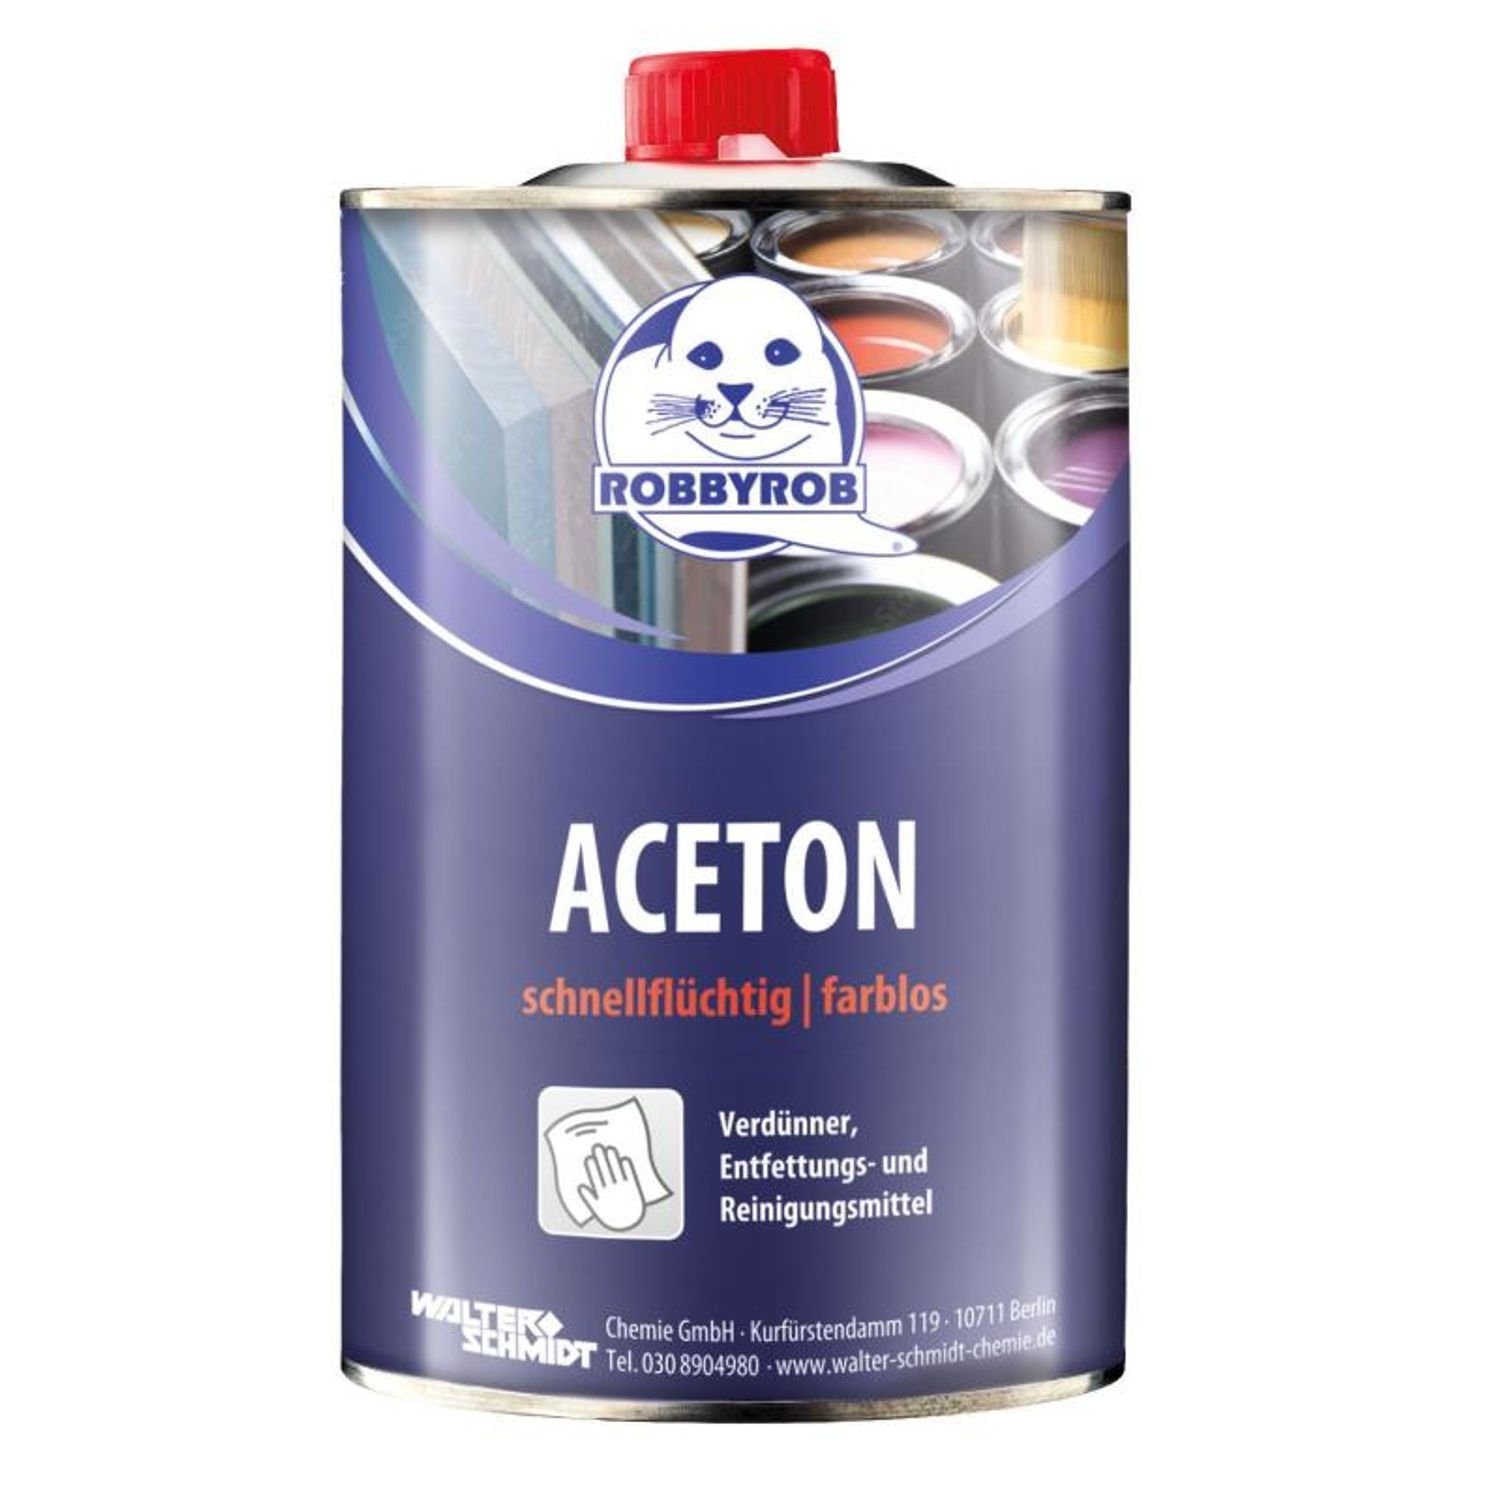 Robbyrob 12x 1l Dose Aceton Verdünner Entfettungs- & Reinigungsmittel Lösungsm. Bremsenreiniger